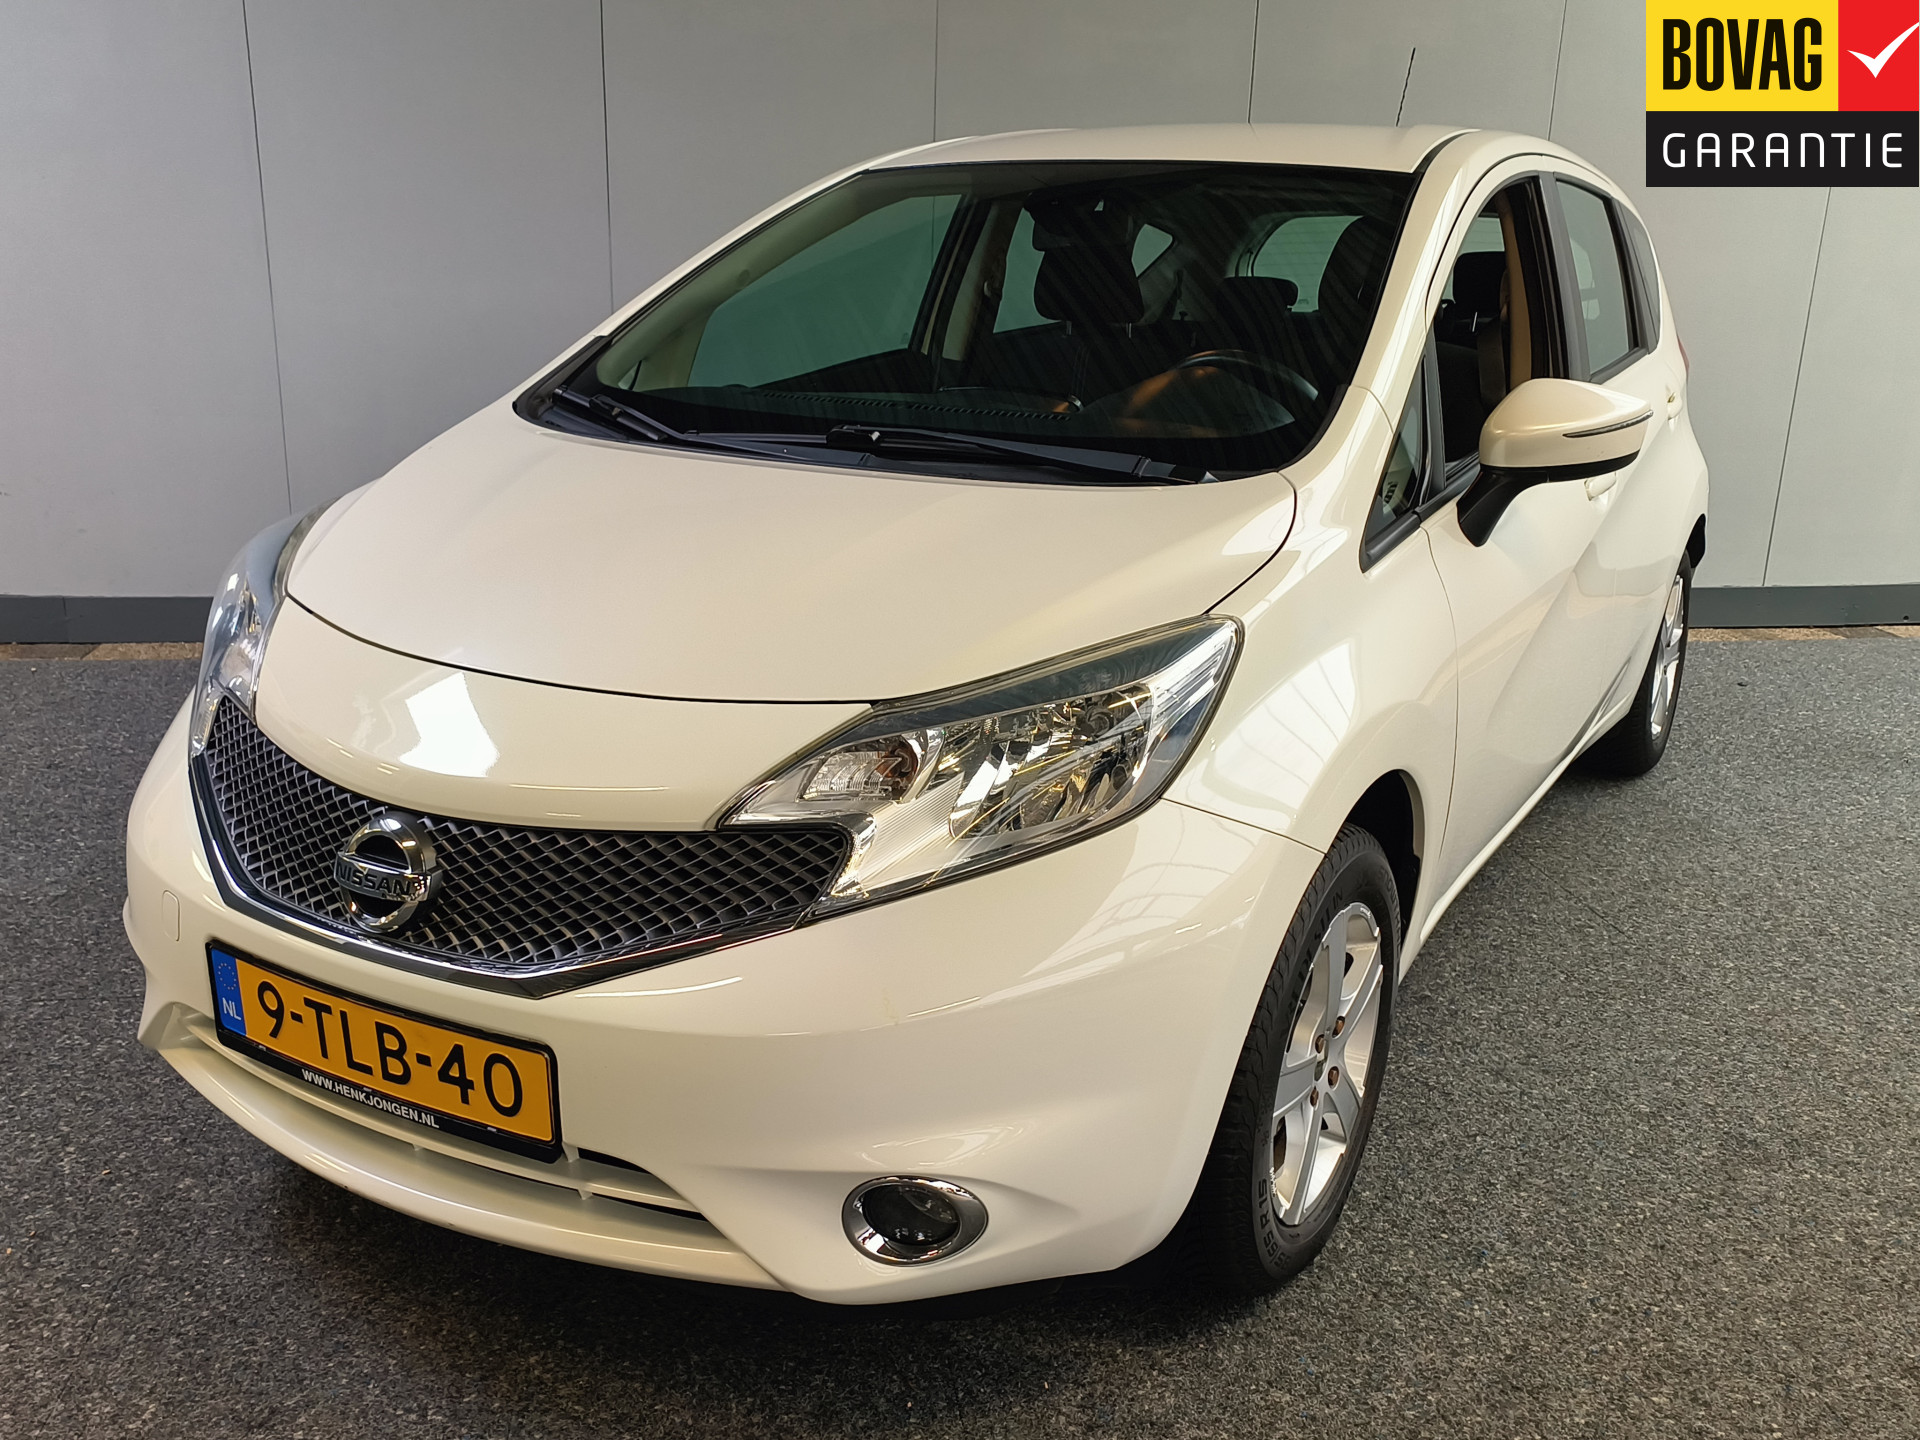 Nissan Note 1.2 Connect Edition uit 2014 Rijklaar + 12 maanden Bovag-garantie  Henk Jongen Auto's in Helmond,  al 50 jaar service zoals 't hoort!